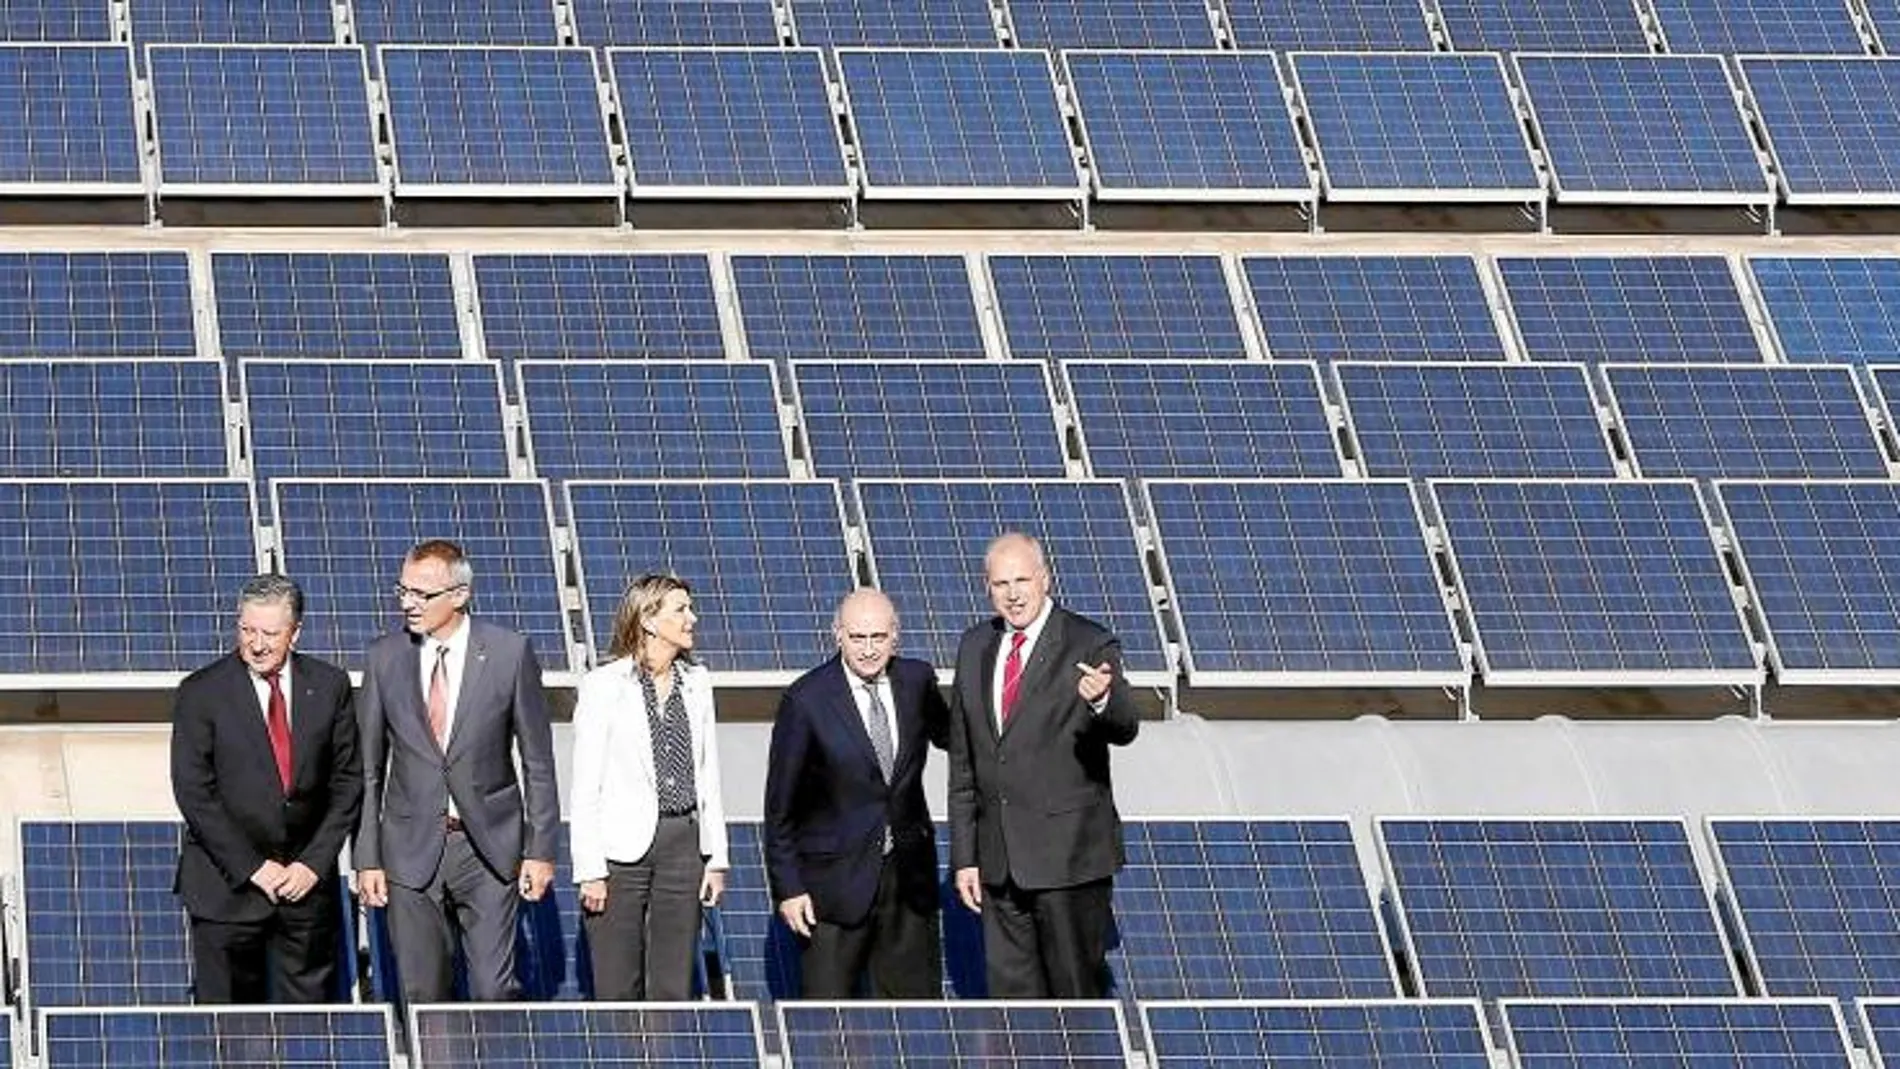 El ministro del Interior, Jorge Fernández Díaz, inauguró ayer la planta solar de Seat junto a tres directivos de la compañía, entre ellos el presidente, Jürgen Stackmann, y la delegada del Gobierno en Cataluña, Llanos de Luna